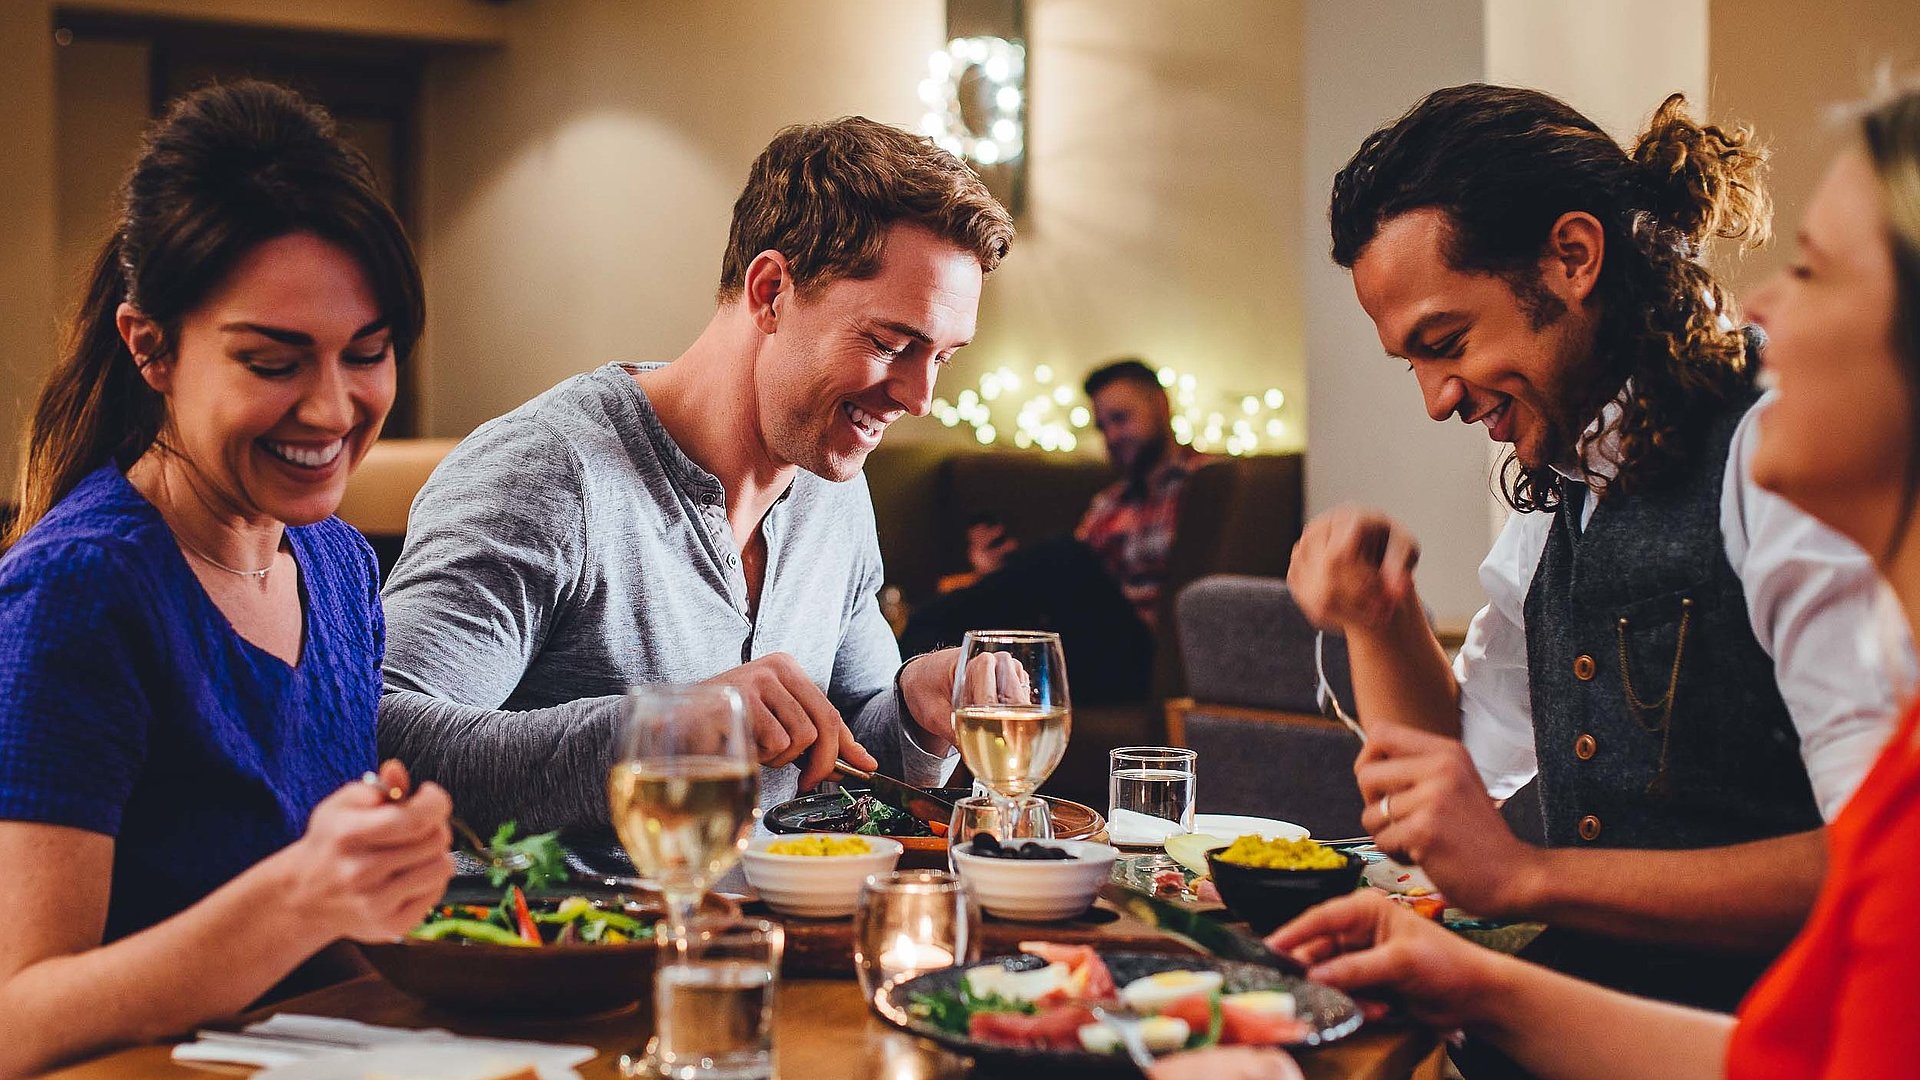 Gastronomie im Video Oberfranken -  eine Gruppe von Gästen lacht zusammen an einem bedeckten Tisch